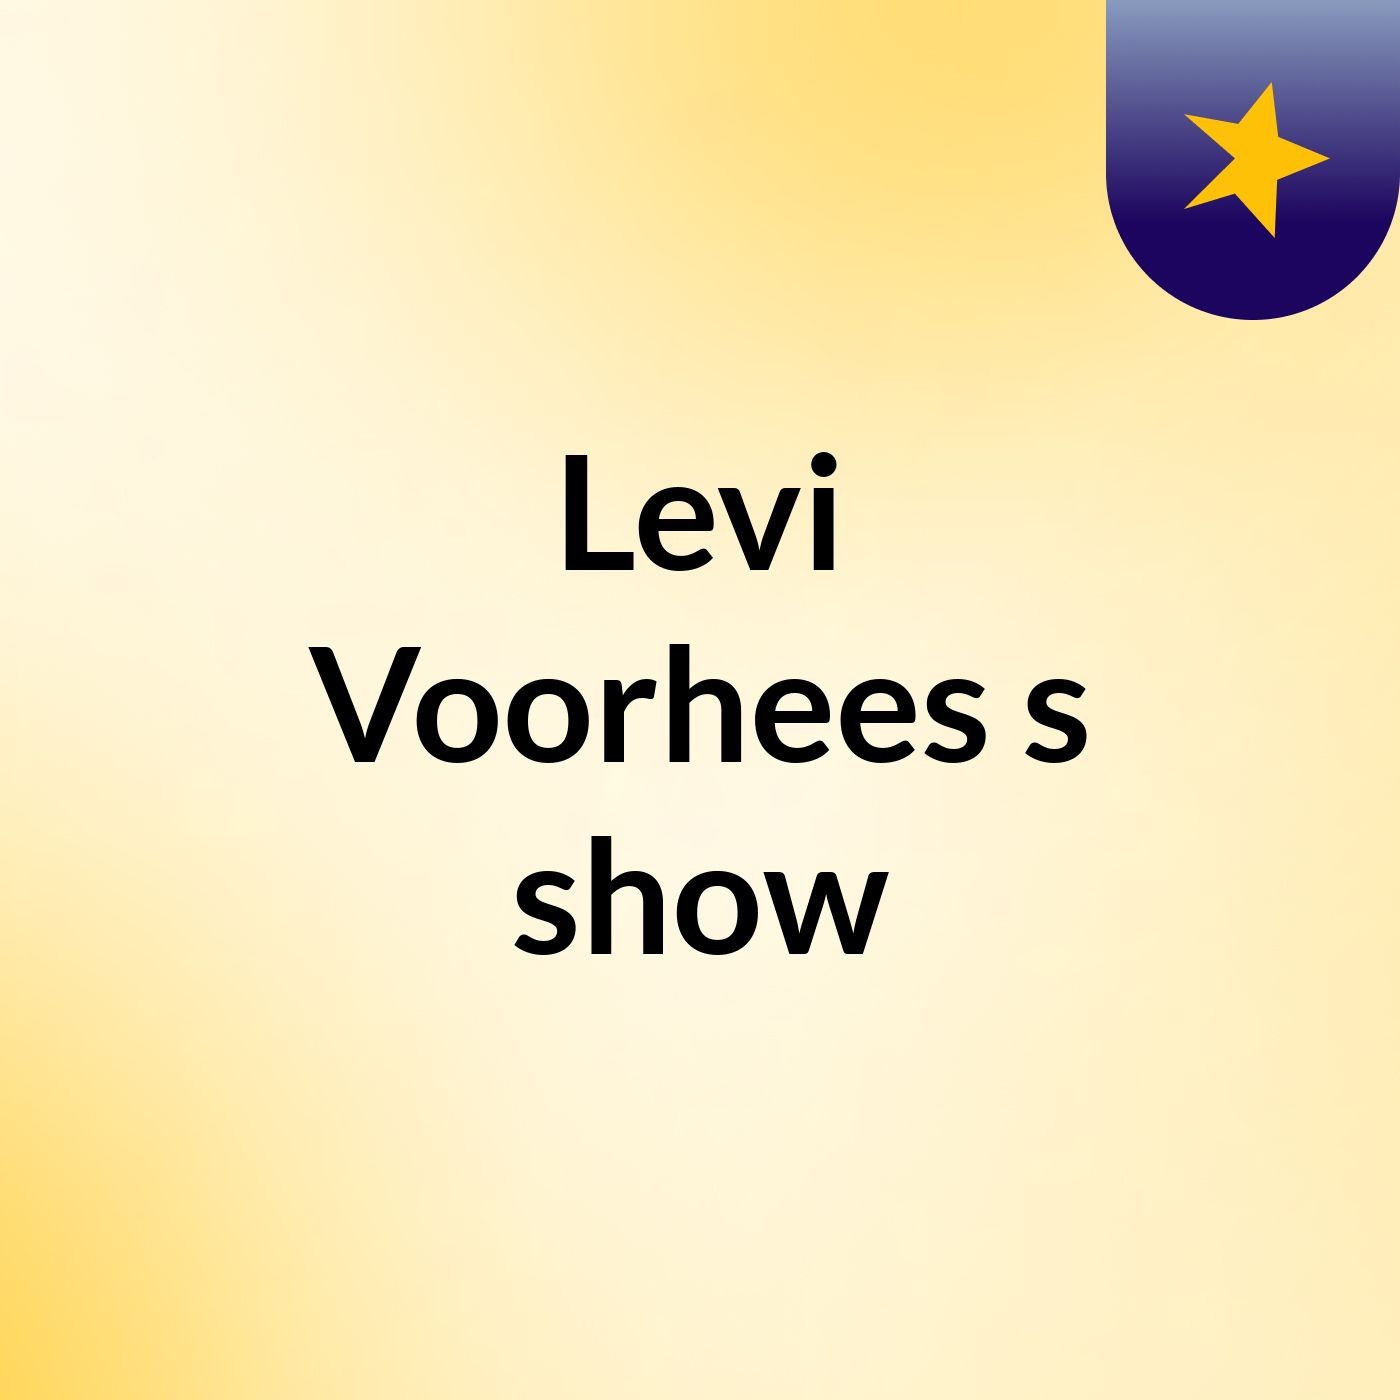 Levi Voorhees's show